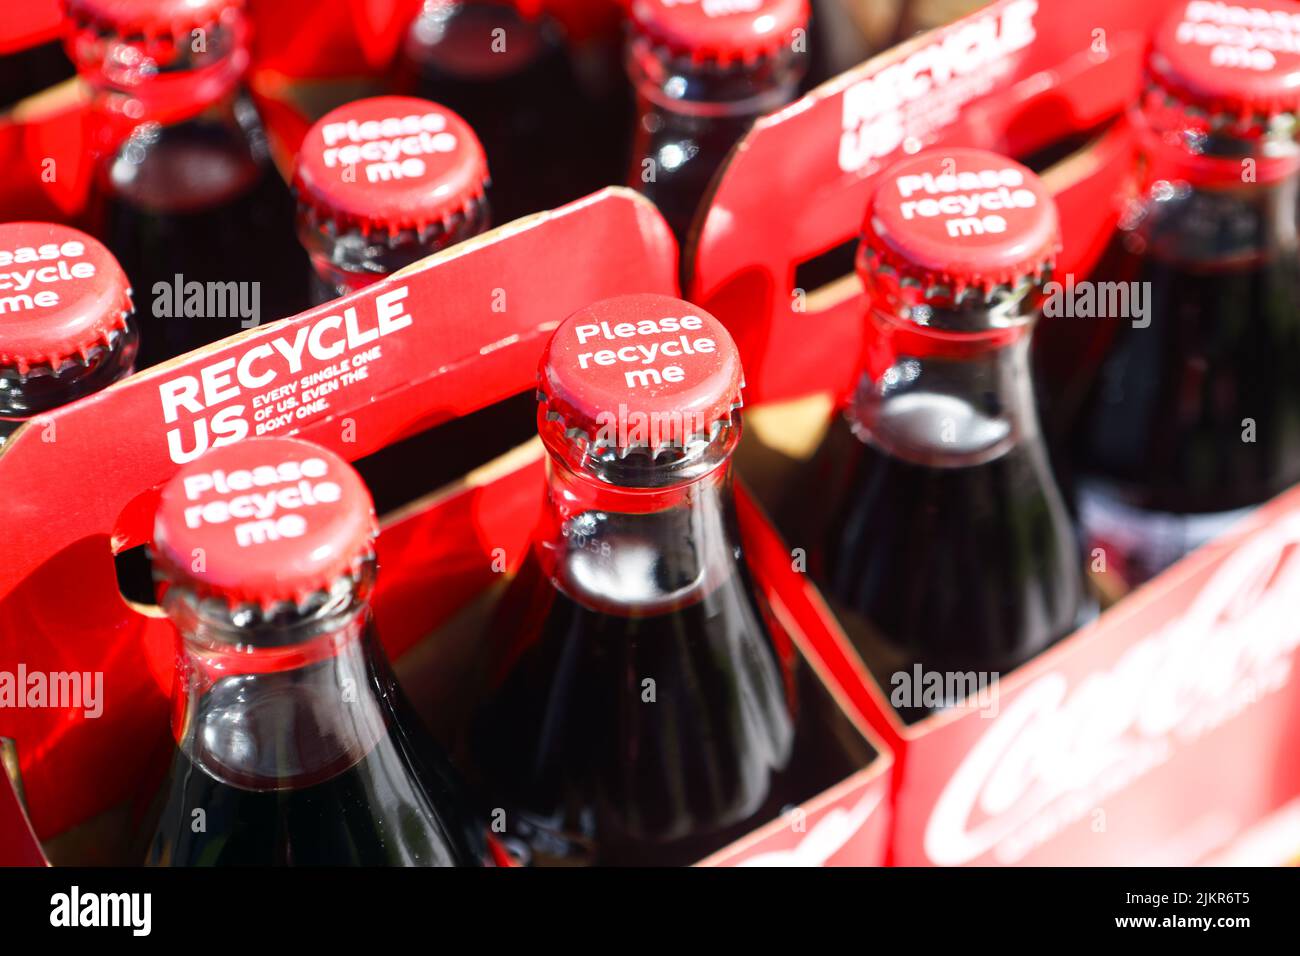 Bottiglie di coke con Coca-Cola che spinge a riciclare, bottiglie, tappi e contenitori di cartone Foto Stock